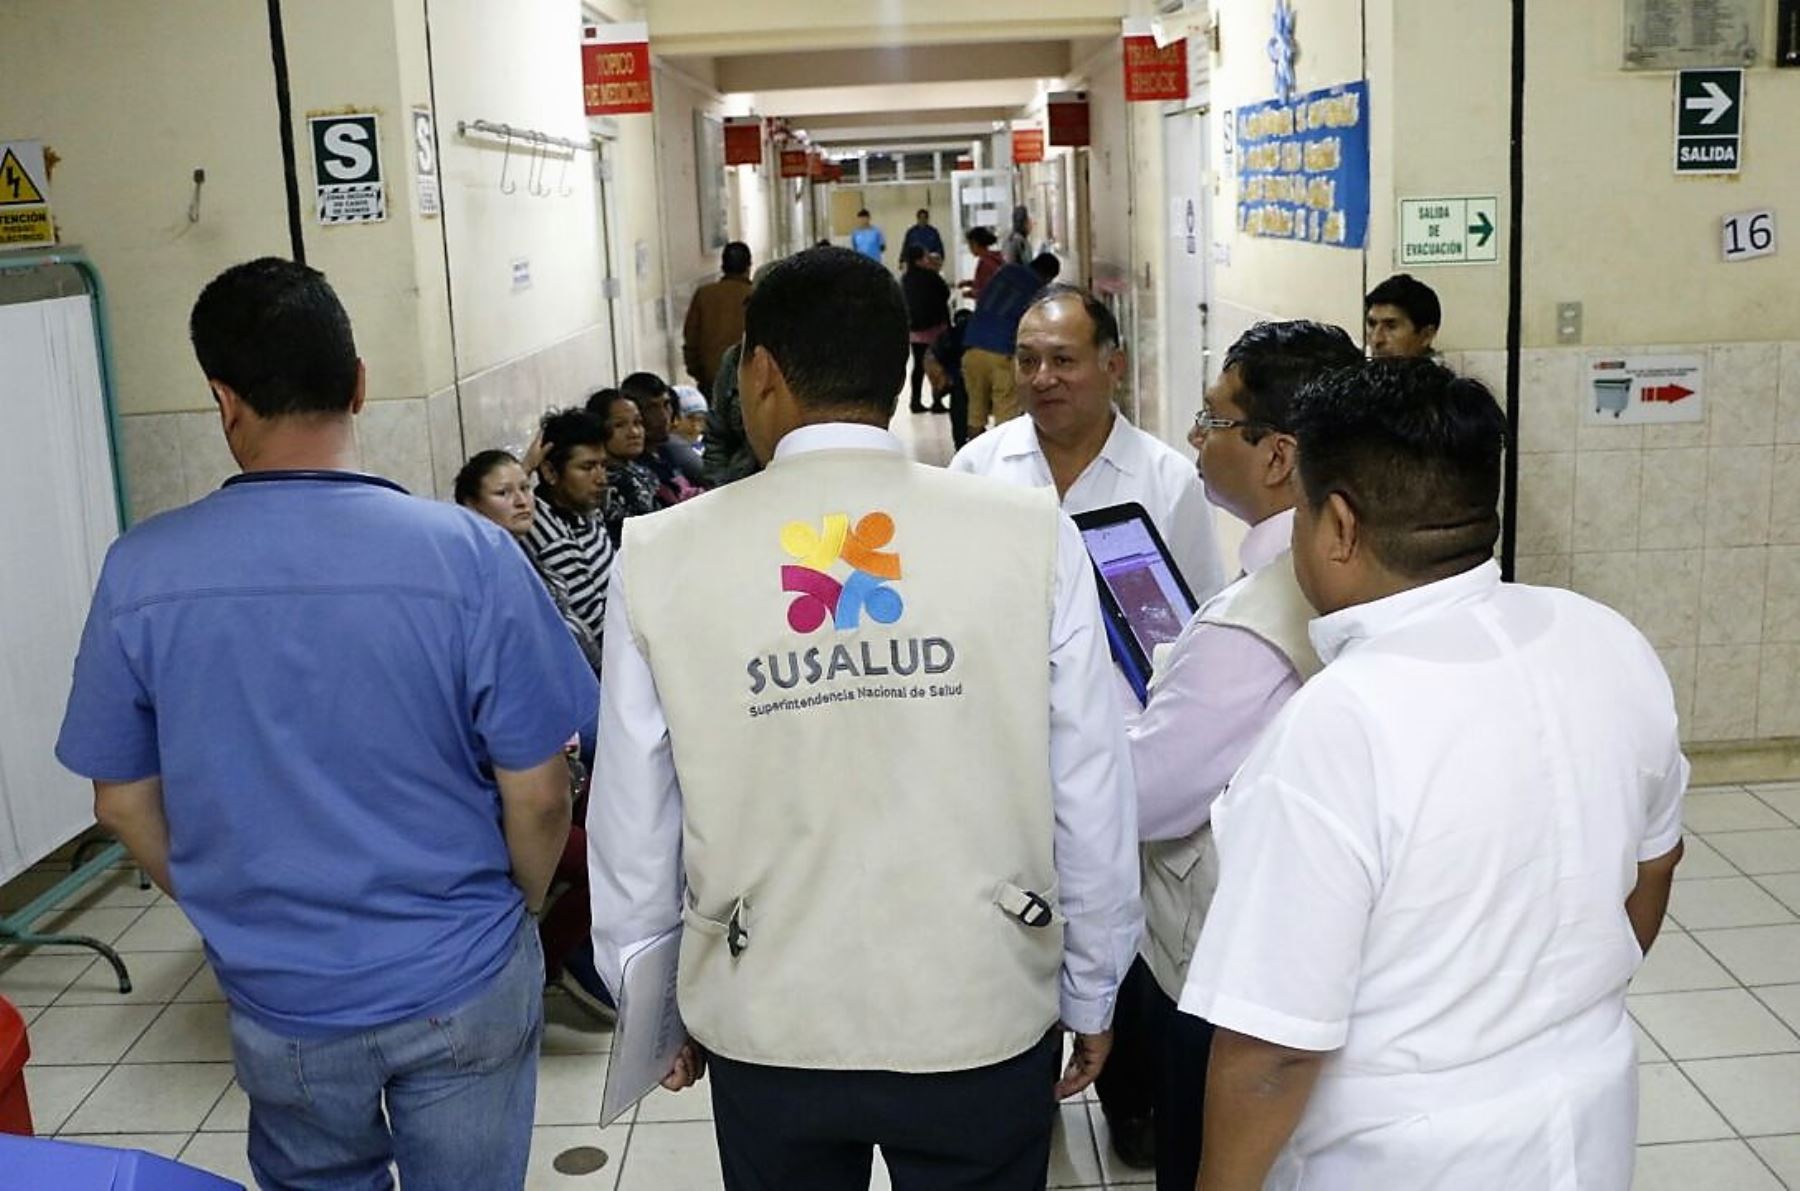 Susalud multará con más S/. 2 millones a hospitales o clínicas por mala atención. Foto: ANDINA/Difusión.